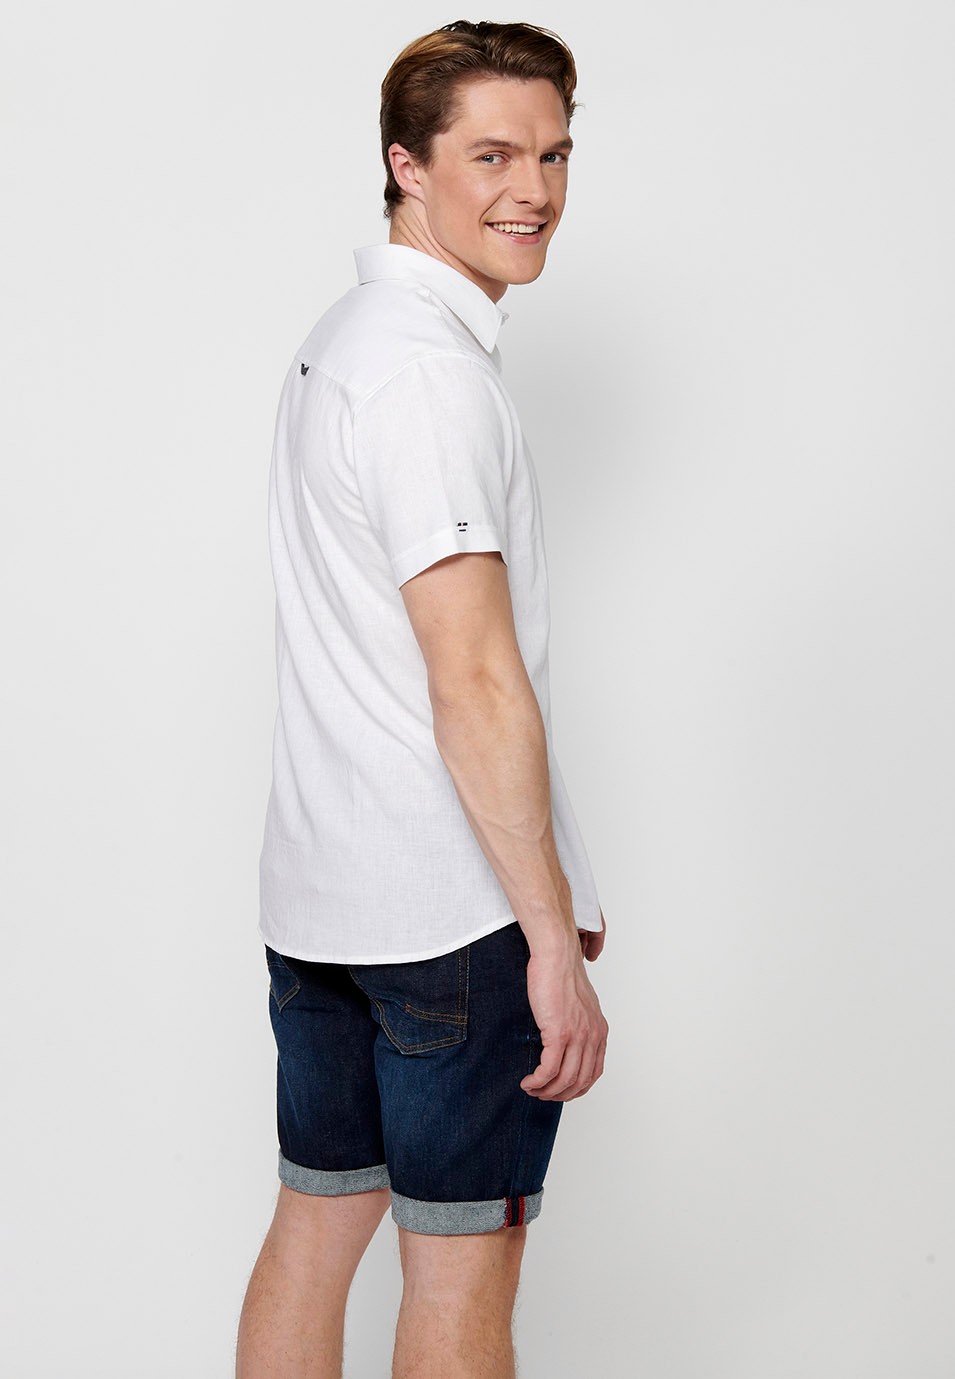 Short Sleeve Linen Shirt, white, for men